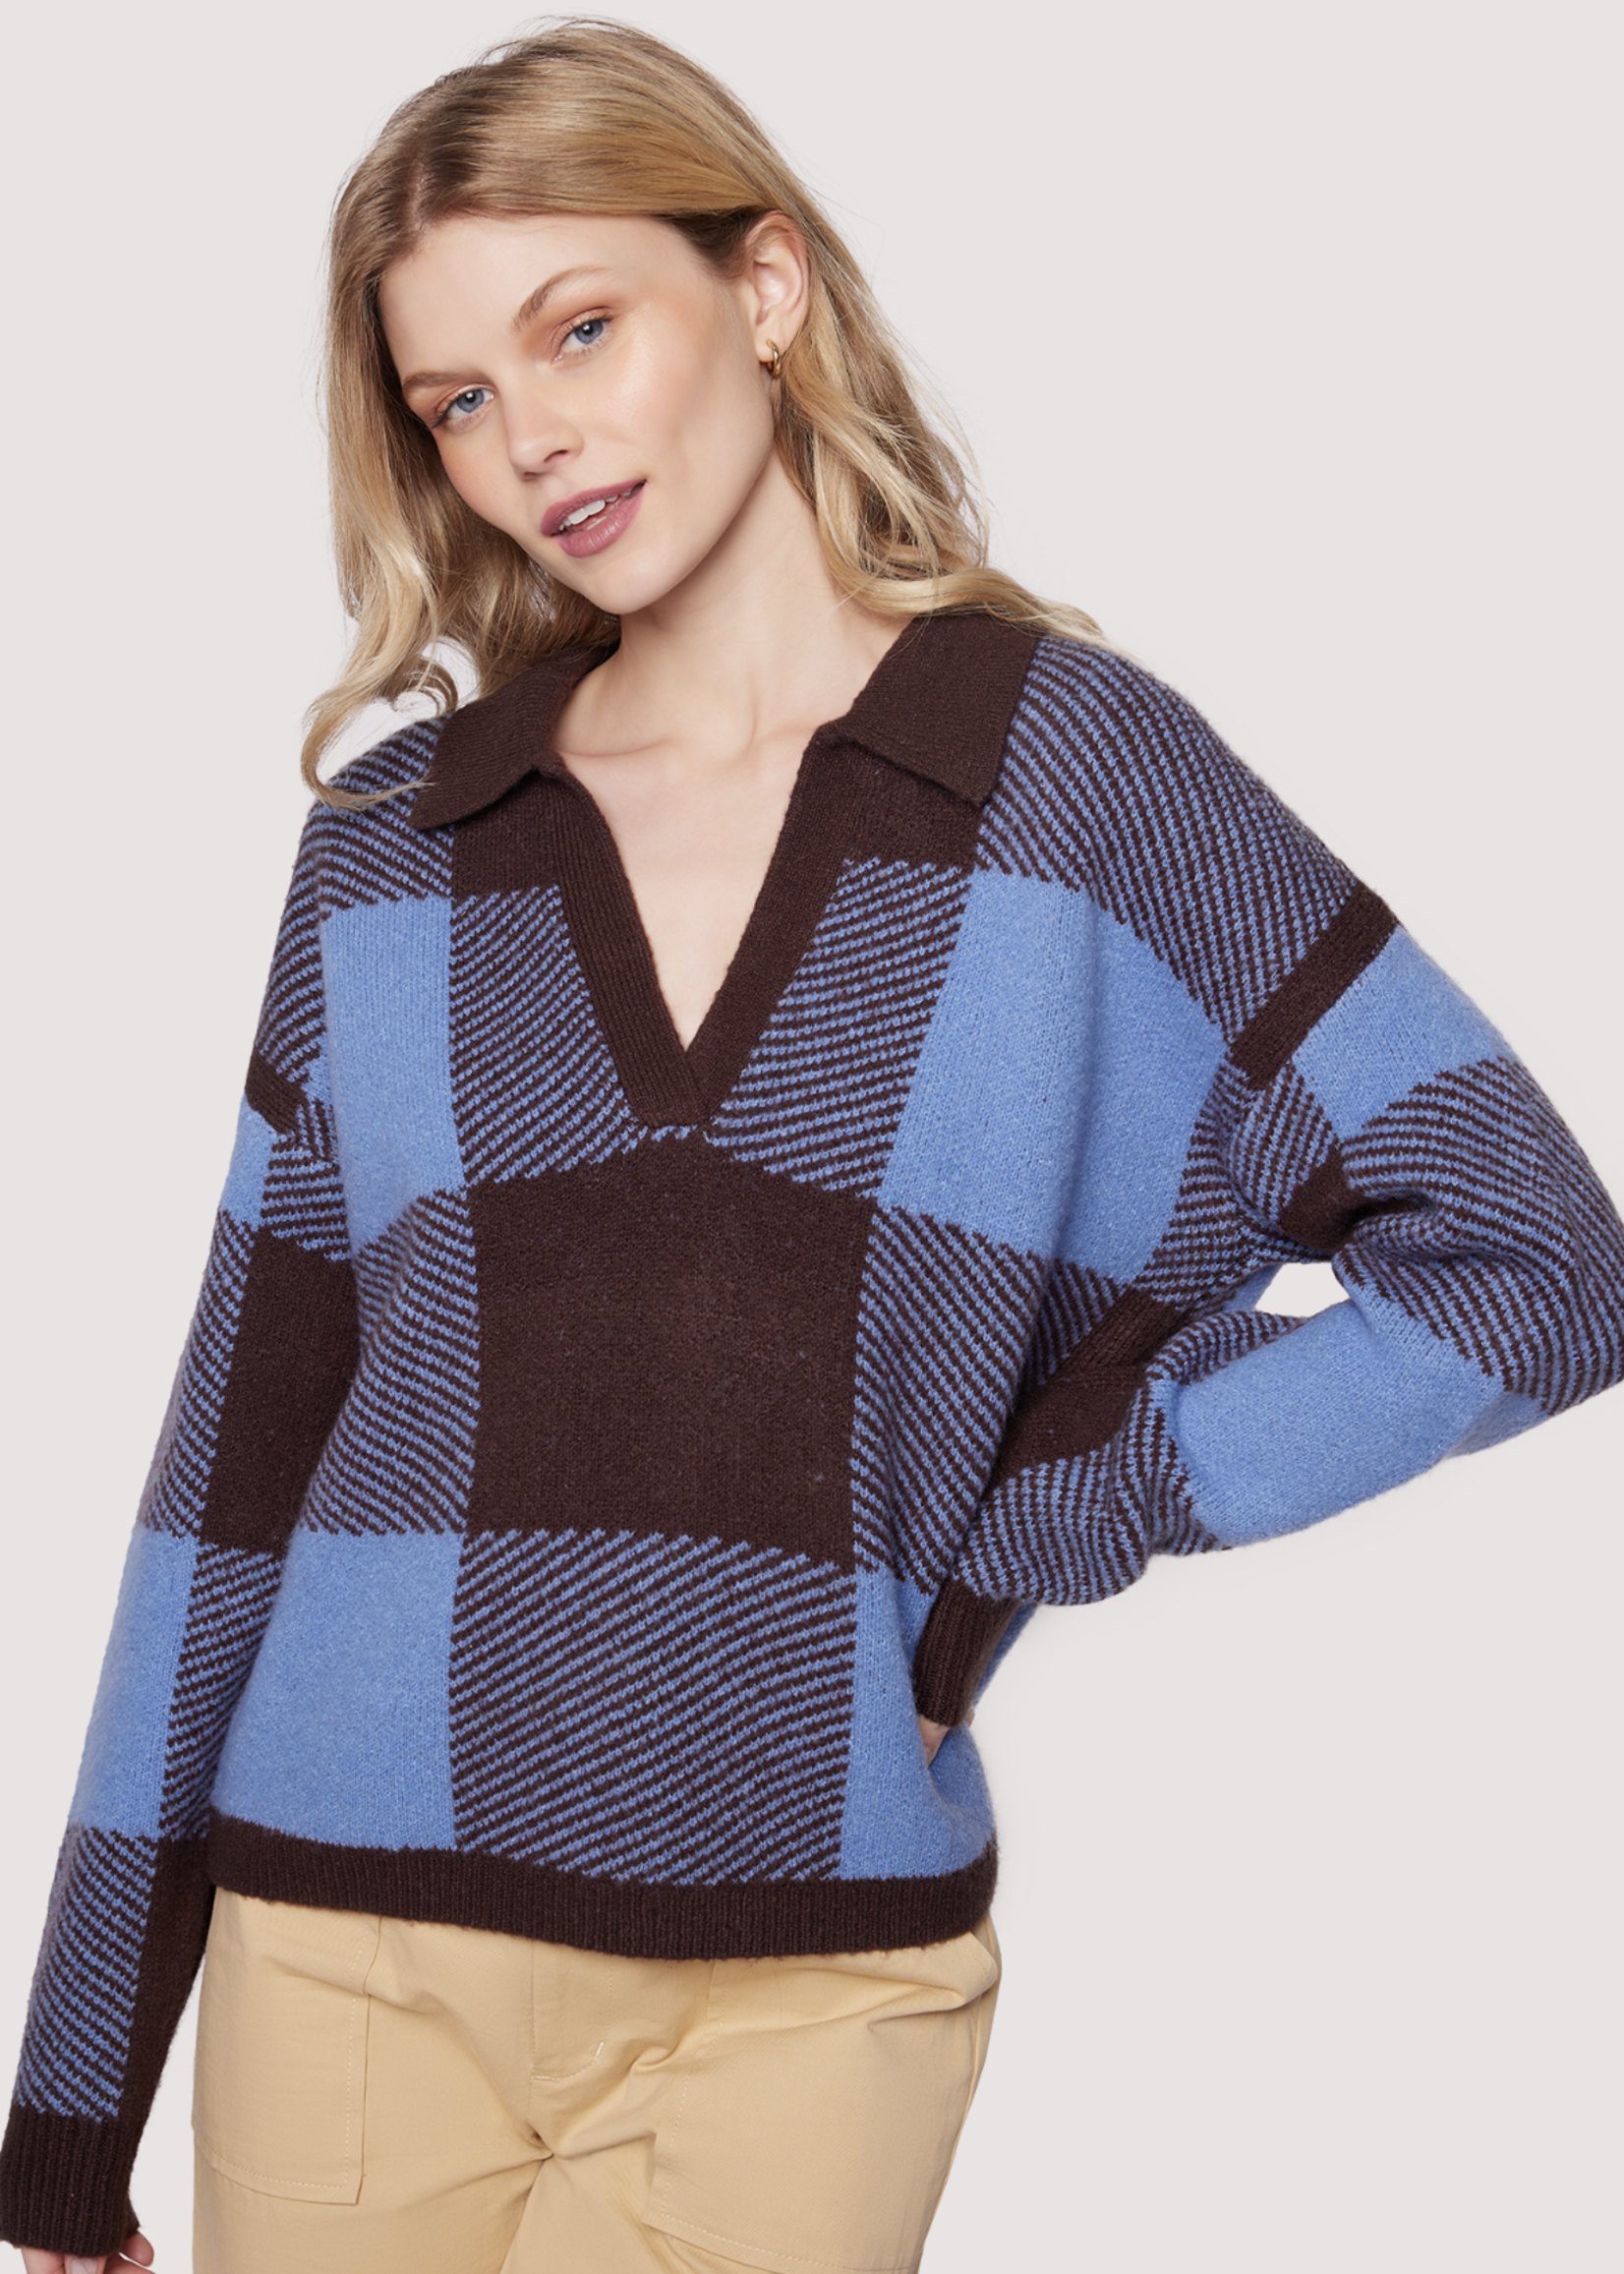 Elitaire Boutique Yale Plaid Sweater